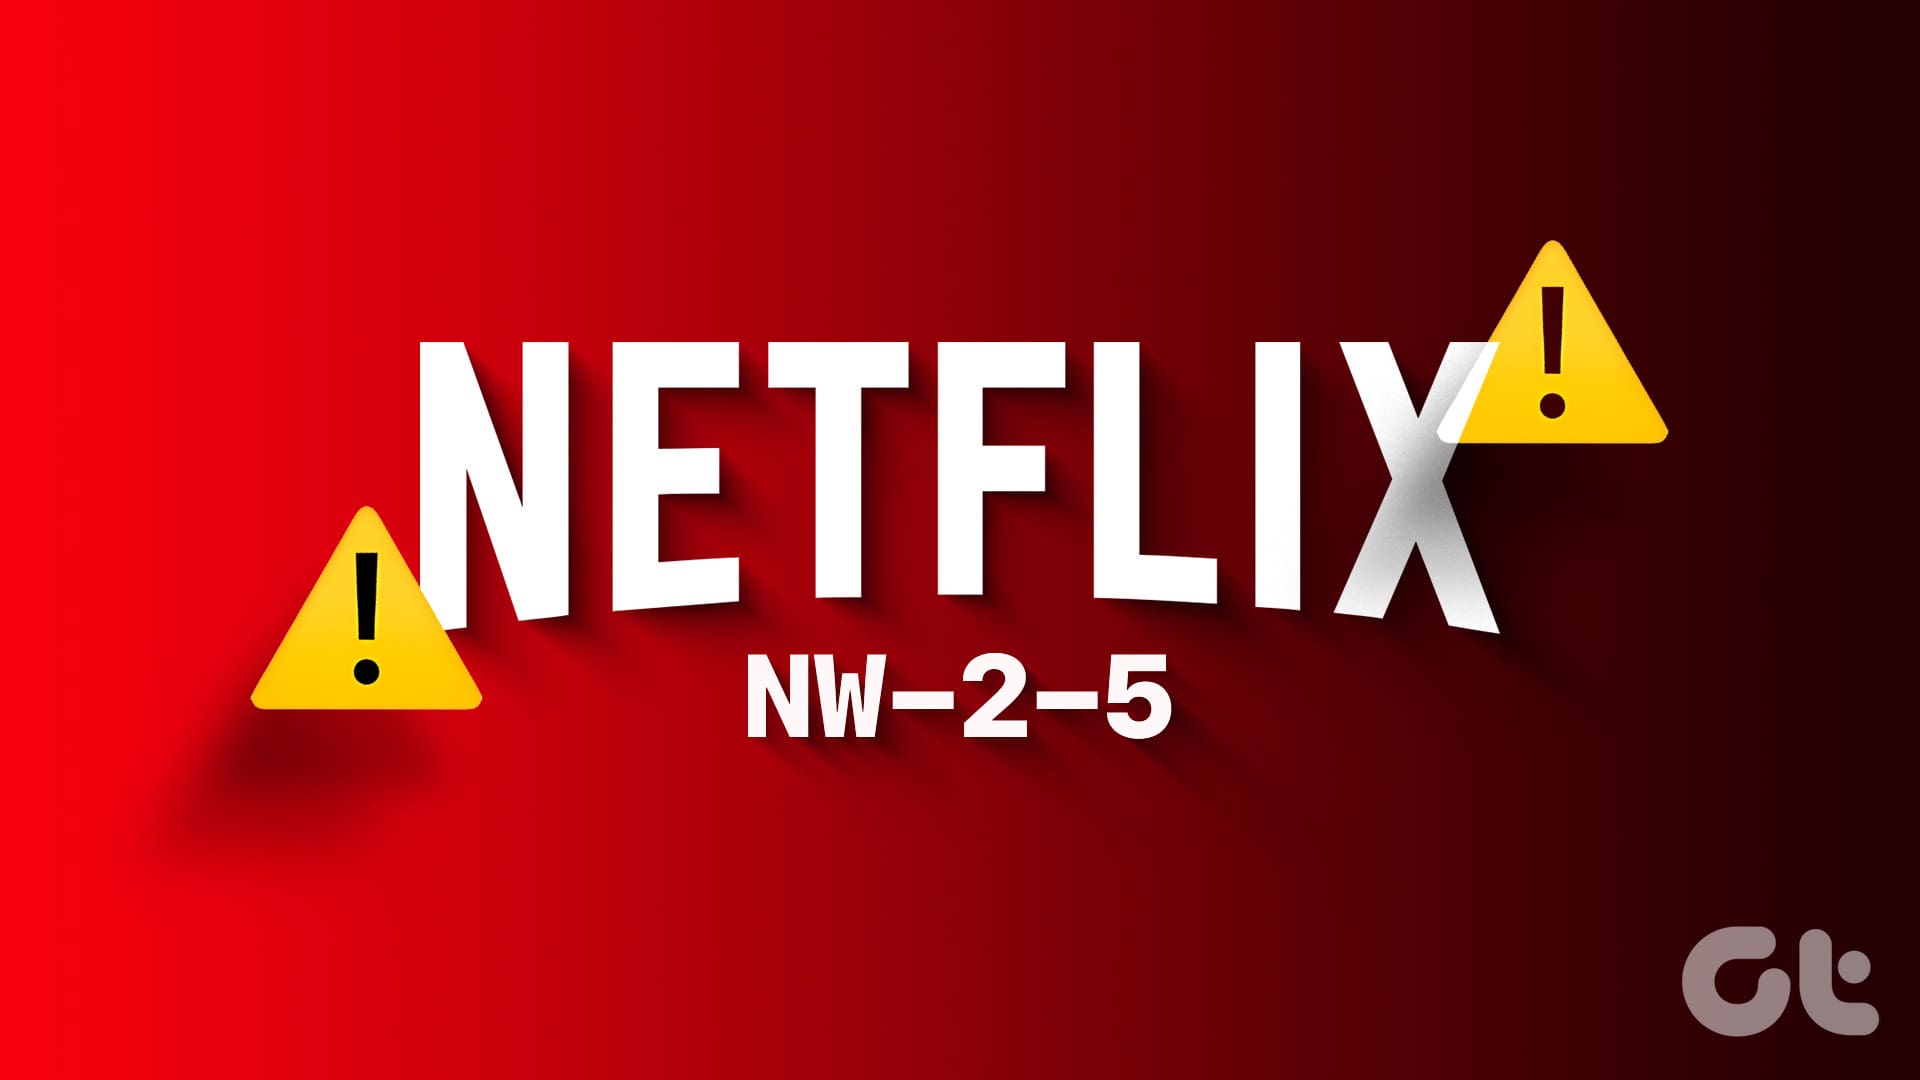 How to Fix Netflix Error Code NW-2-5